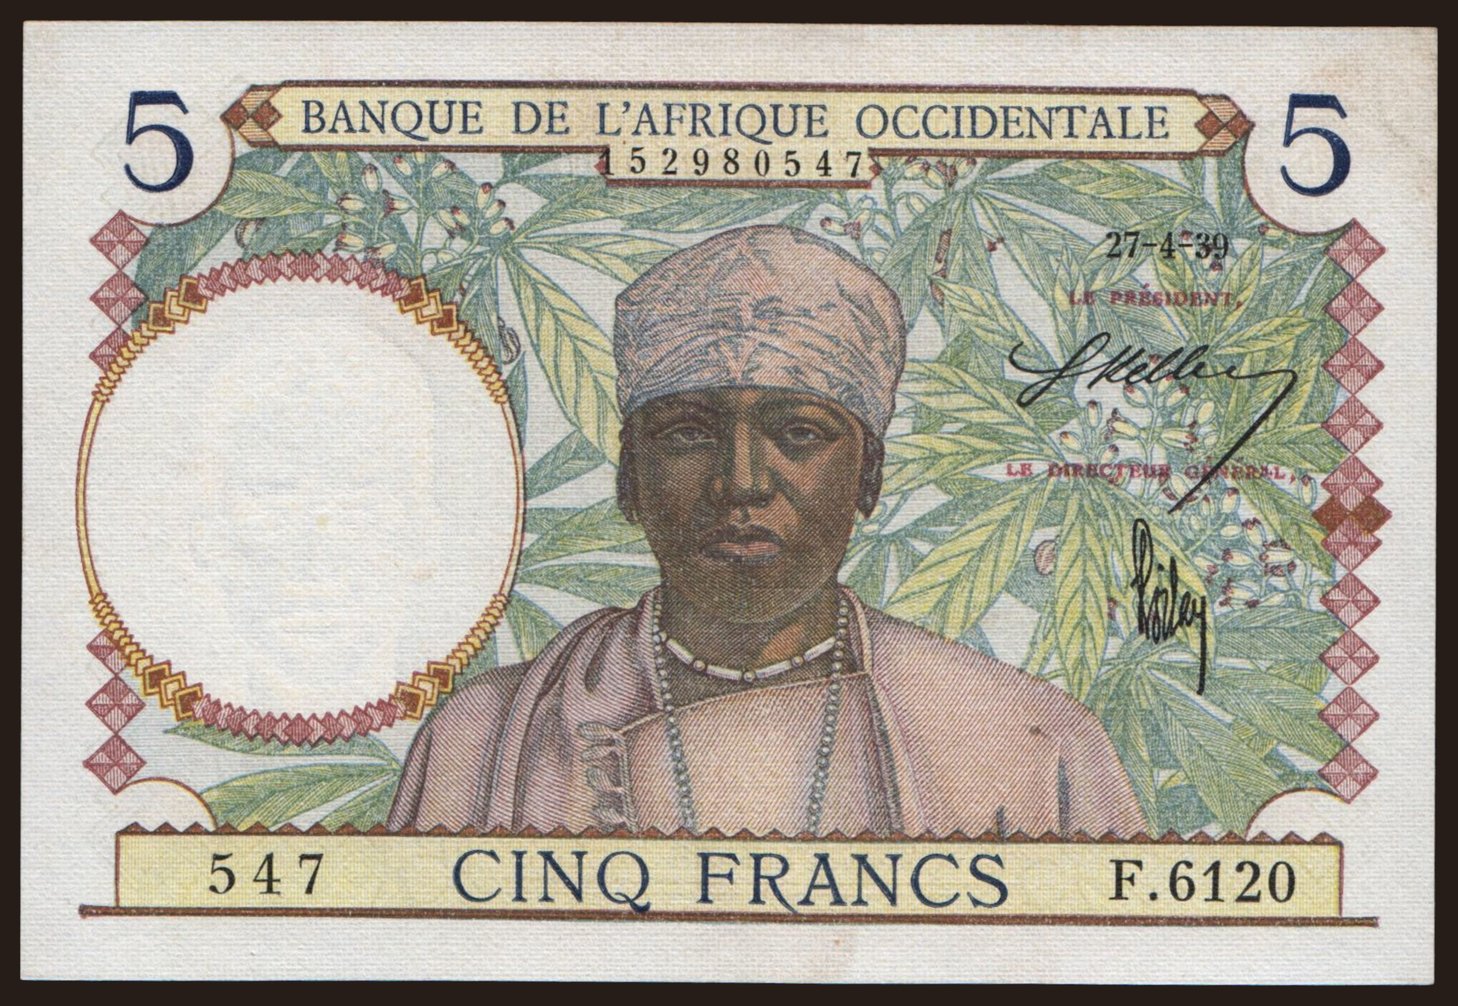 5 francs, 1939